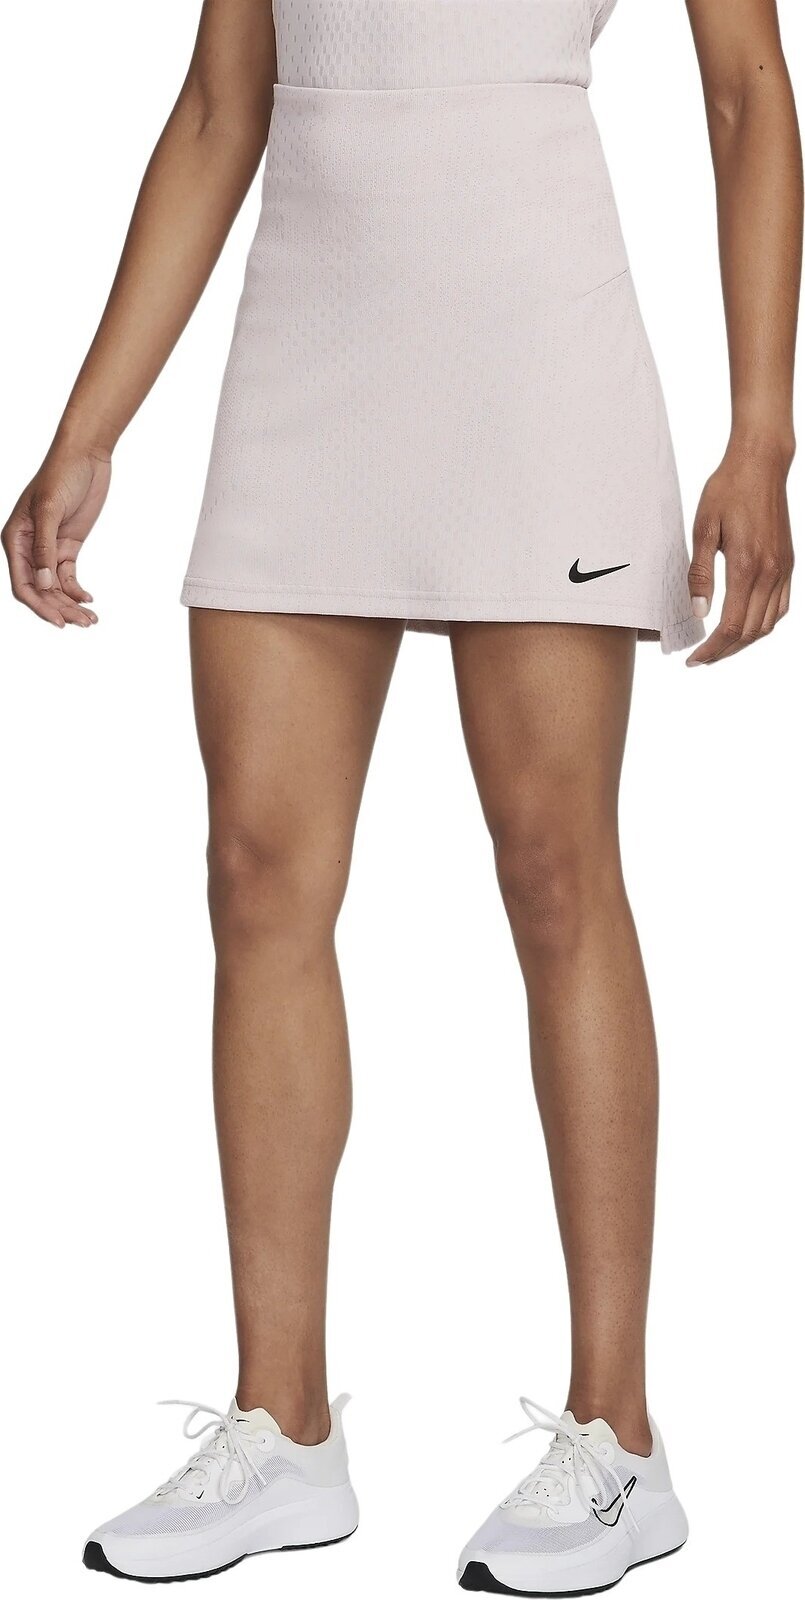 Gonne e vestiti Nike Dri-Fit ADV Tour Skirt Platinum Violet/Black M